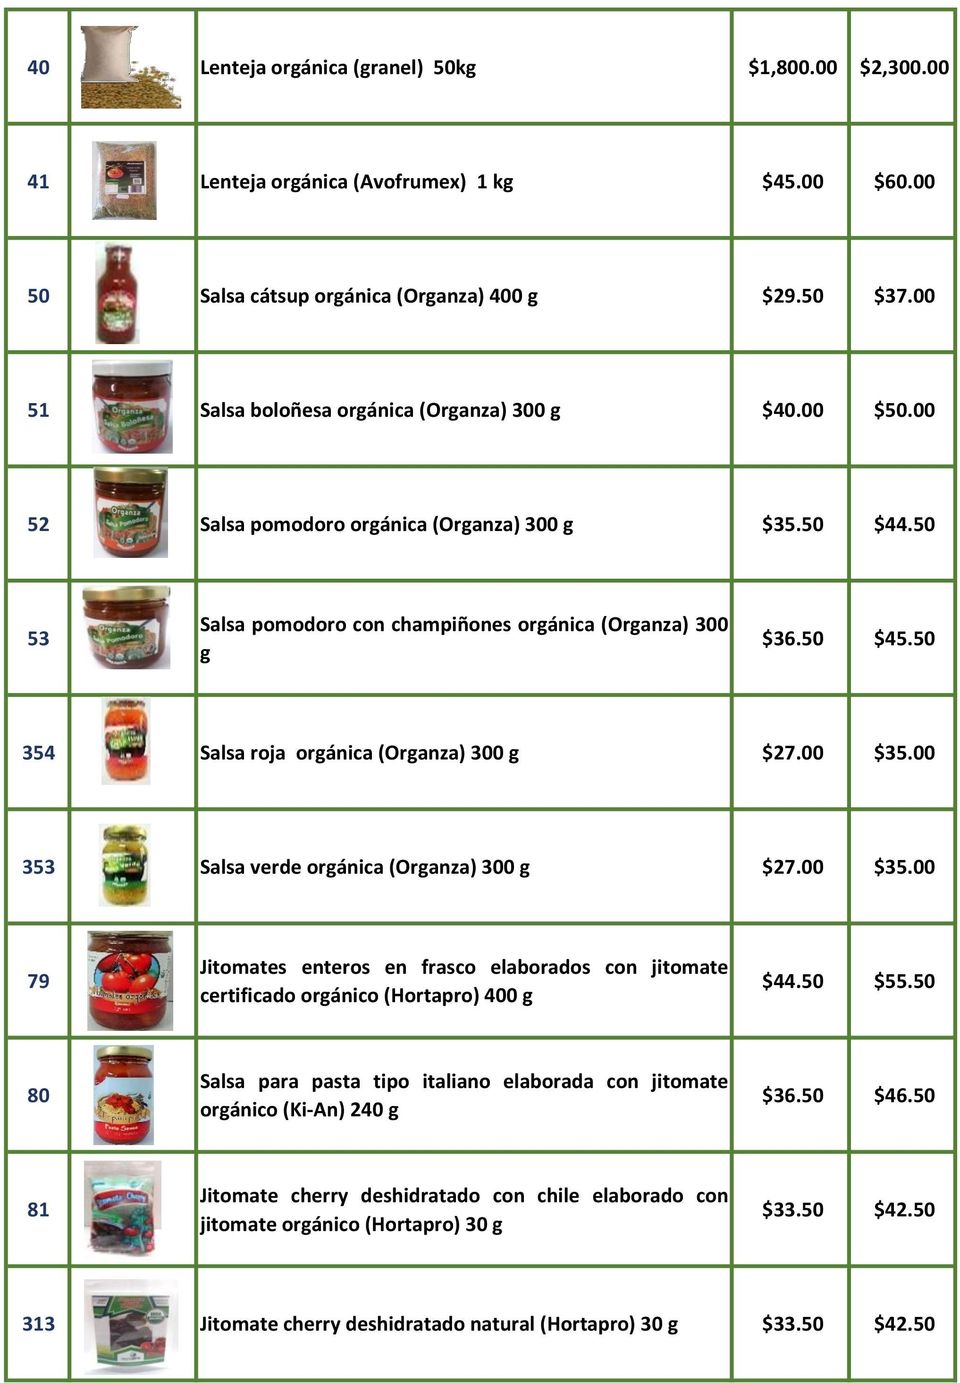 50 354 Salsa roja orgánica (Organza) 300 g $27.00 $35.00 353 Salsa verde orgánica (Organza) 300 g $27.00 $35.00 79 Jitomates enteros en frasco elaborados con jitomate certificado orgánico (Hortapro) 400 g $44.